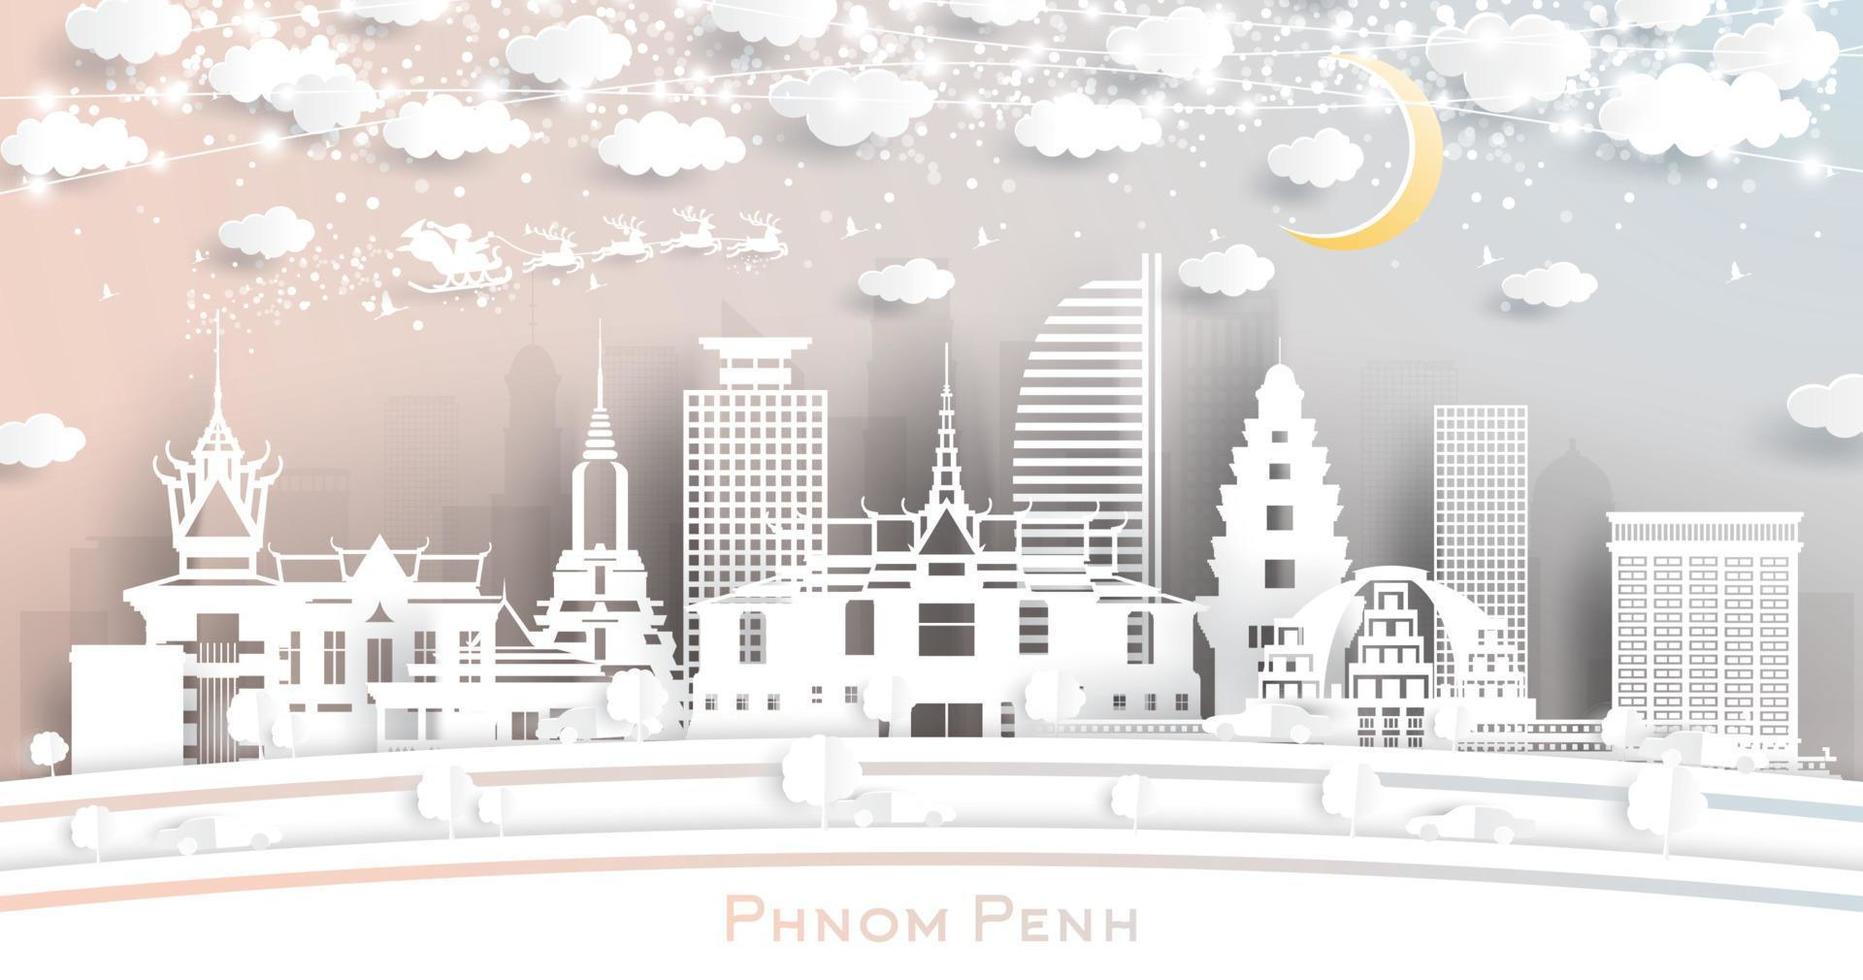 phnom penh Cambodja stad horizon in papier besnoeiing stijl met sneeuwvlokken, maan en neon guirlande. vector